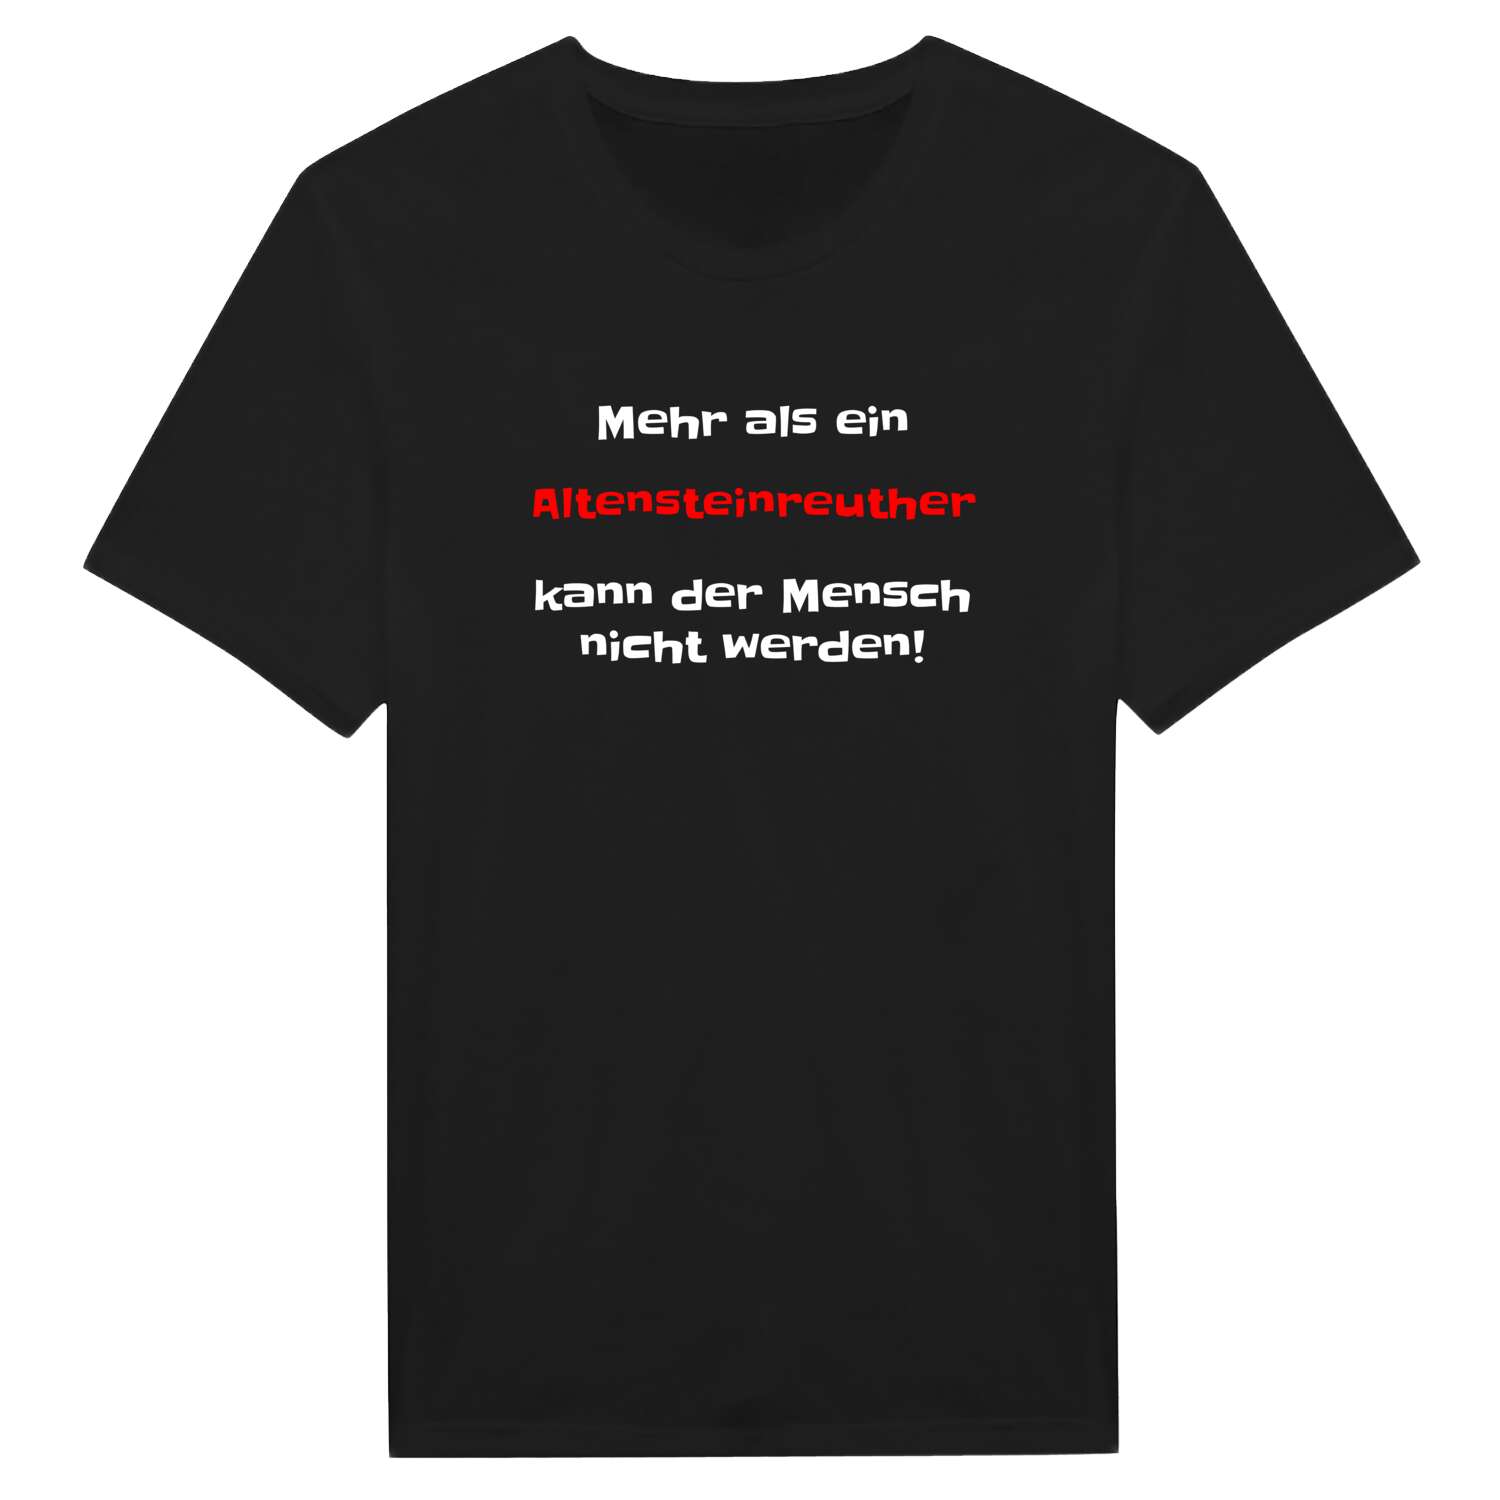 Altensteinreuth T-Shirt »Mehr als ein«